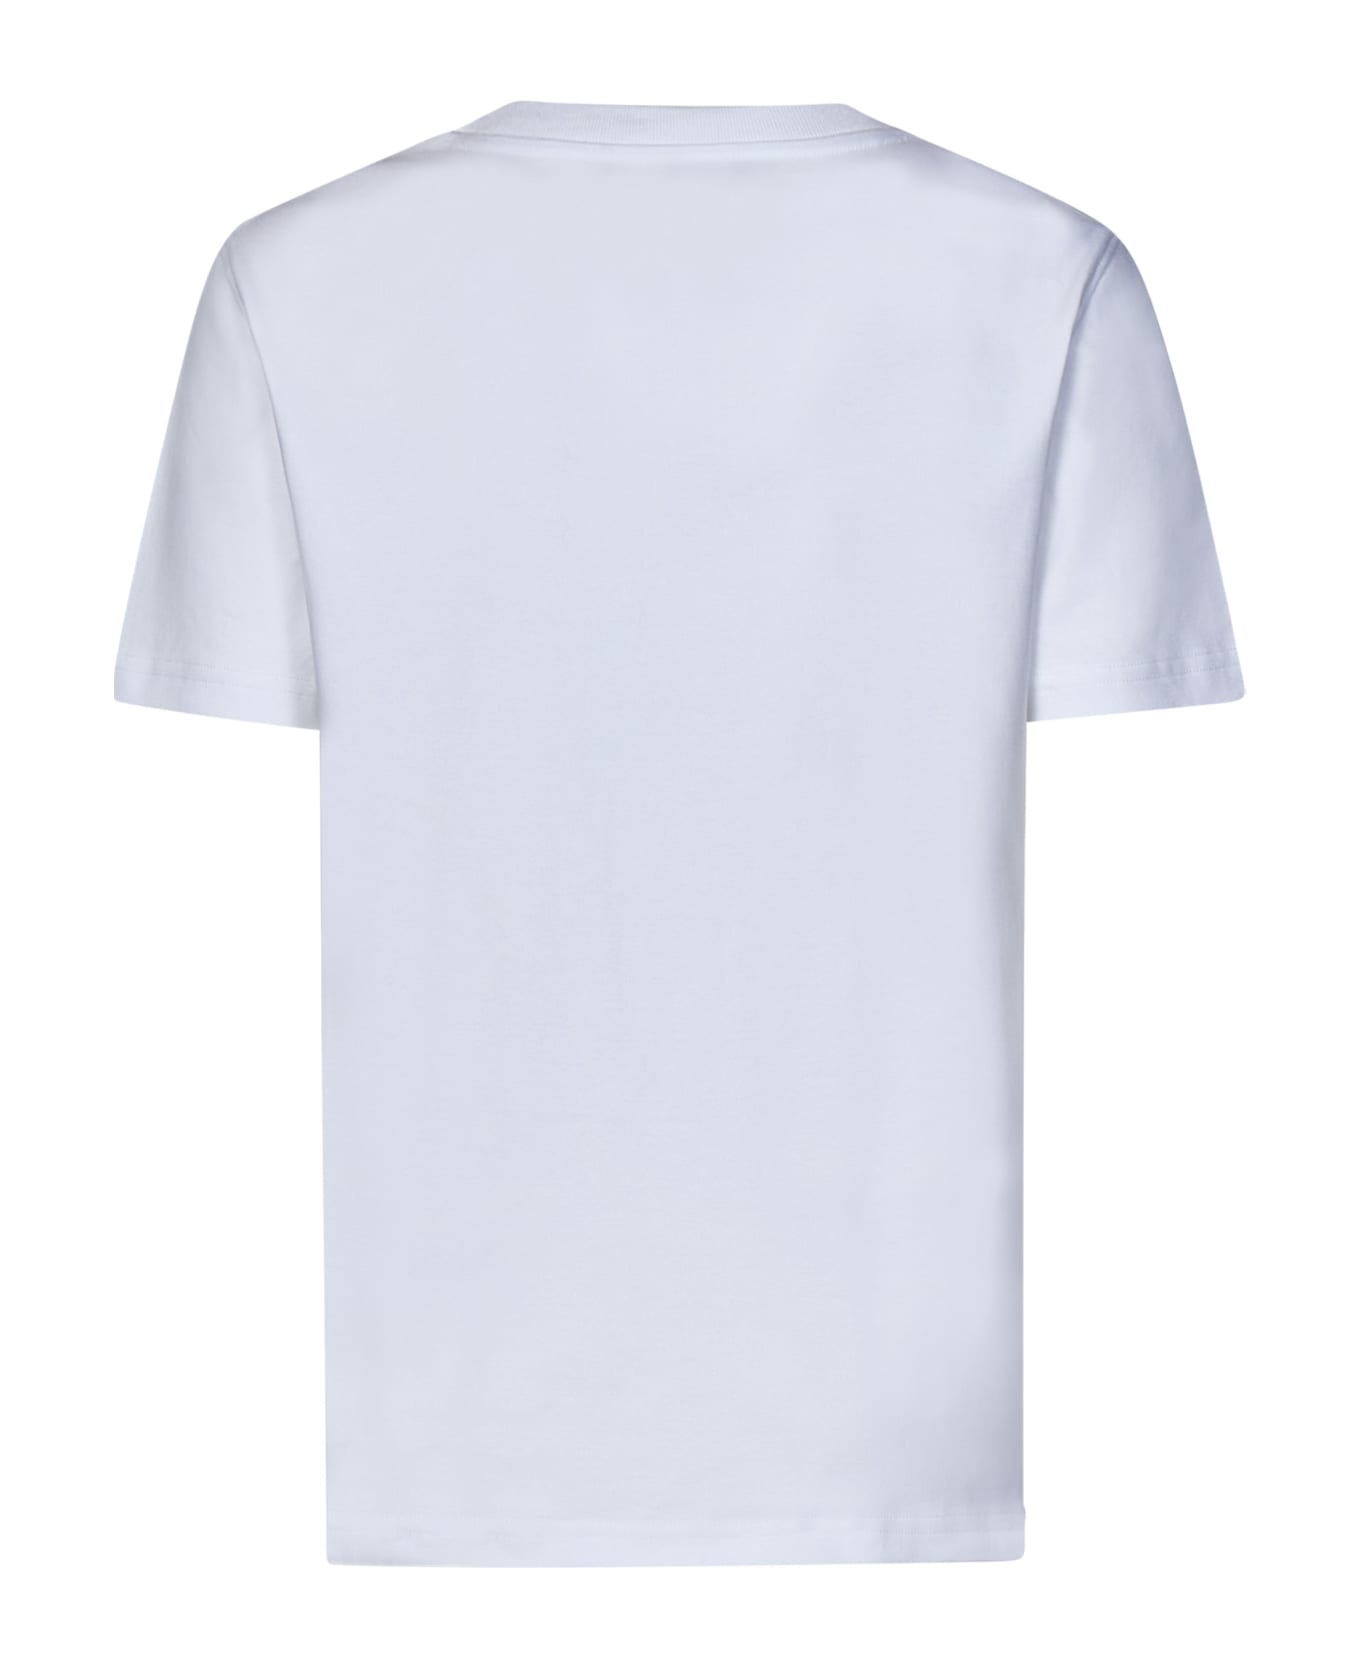 Moschino T-shirt - White Tシャツ